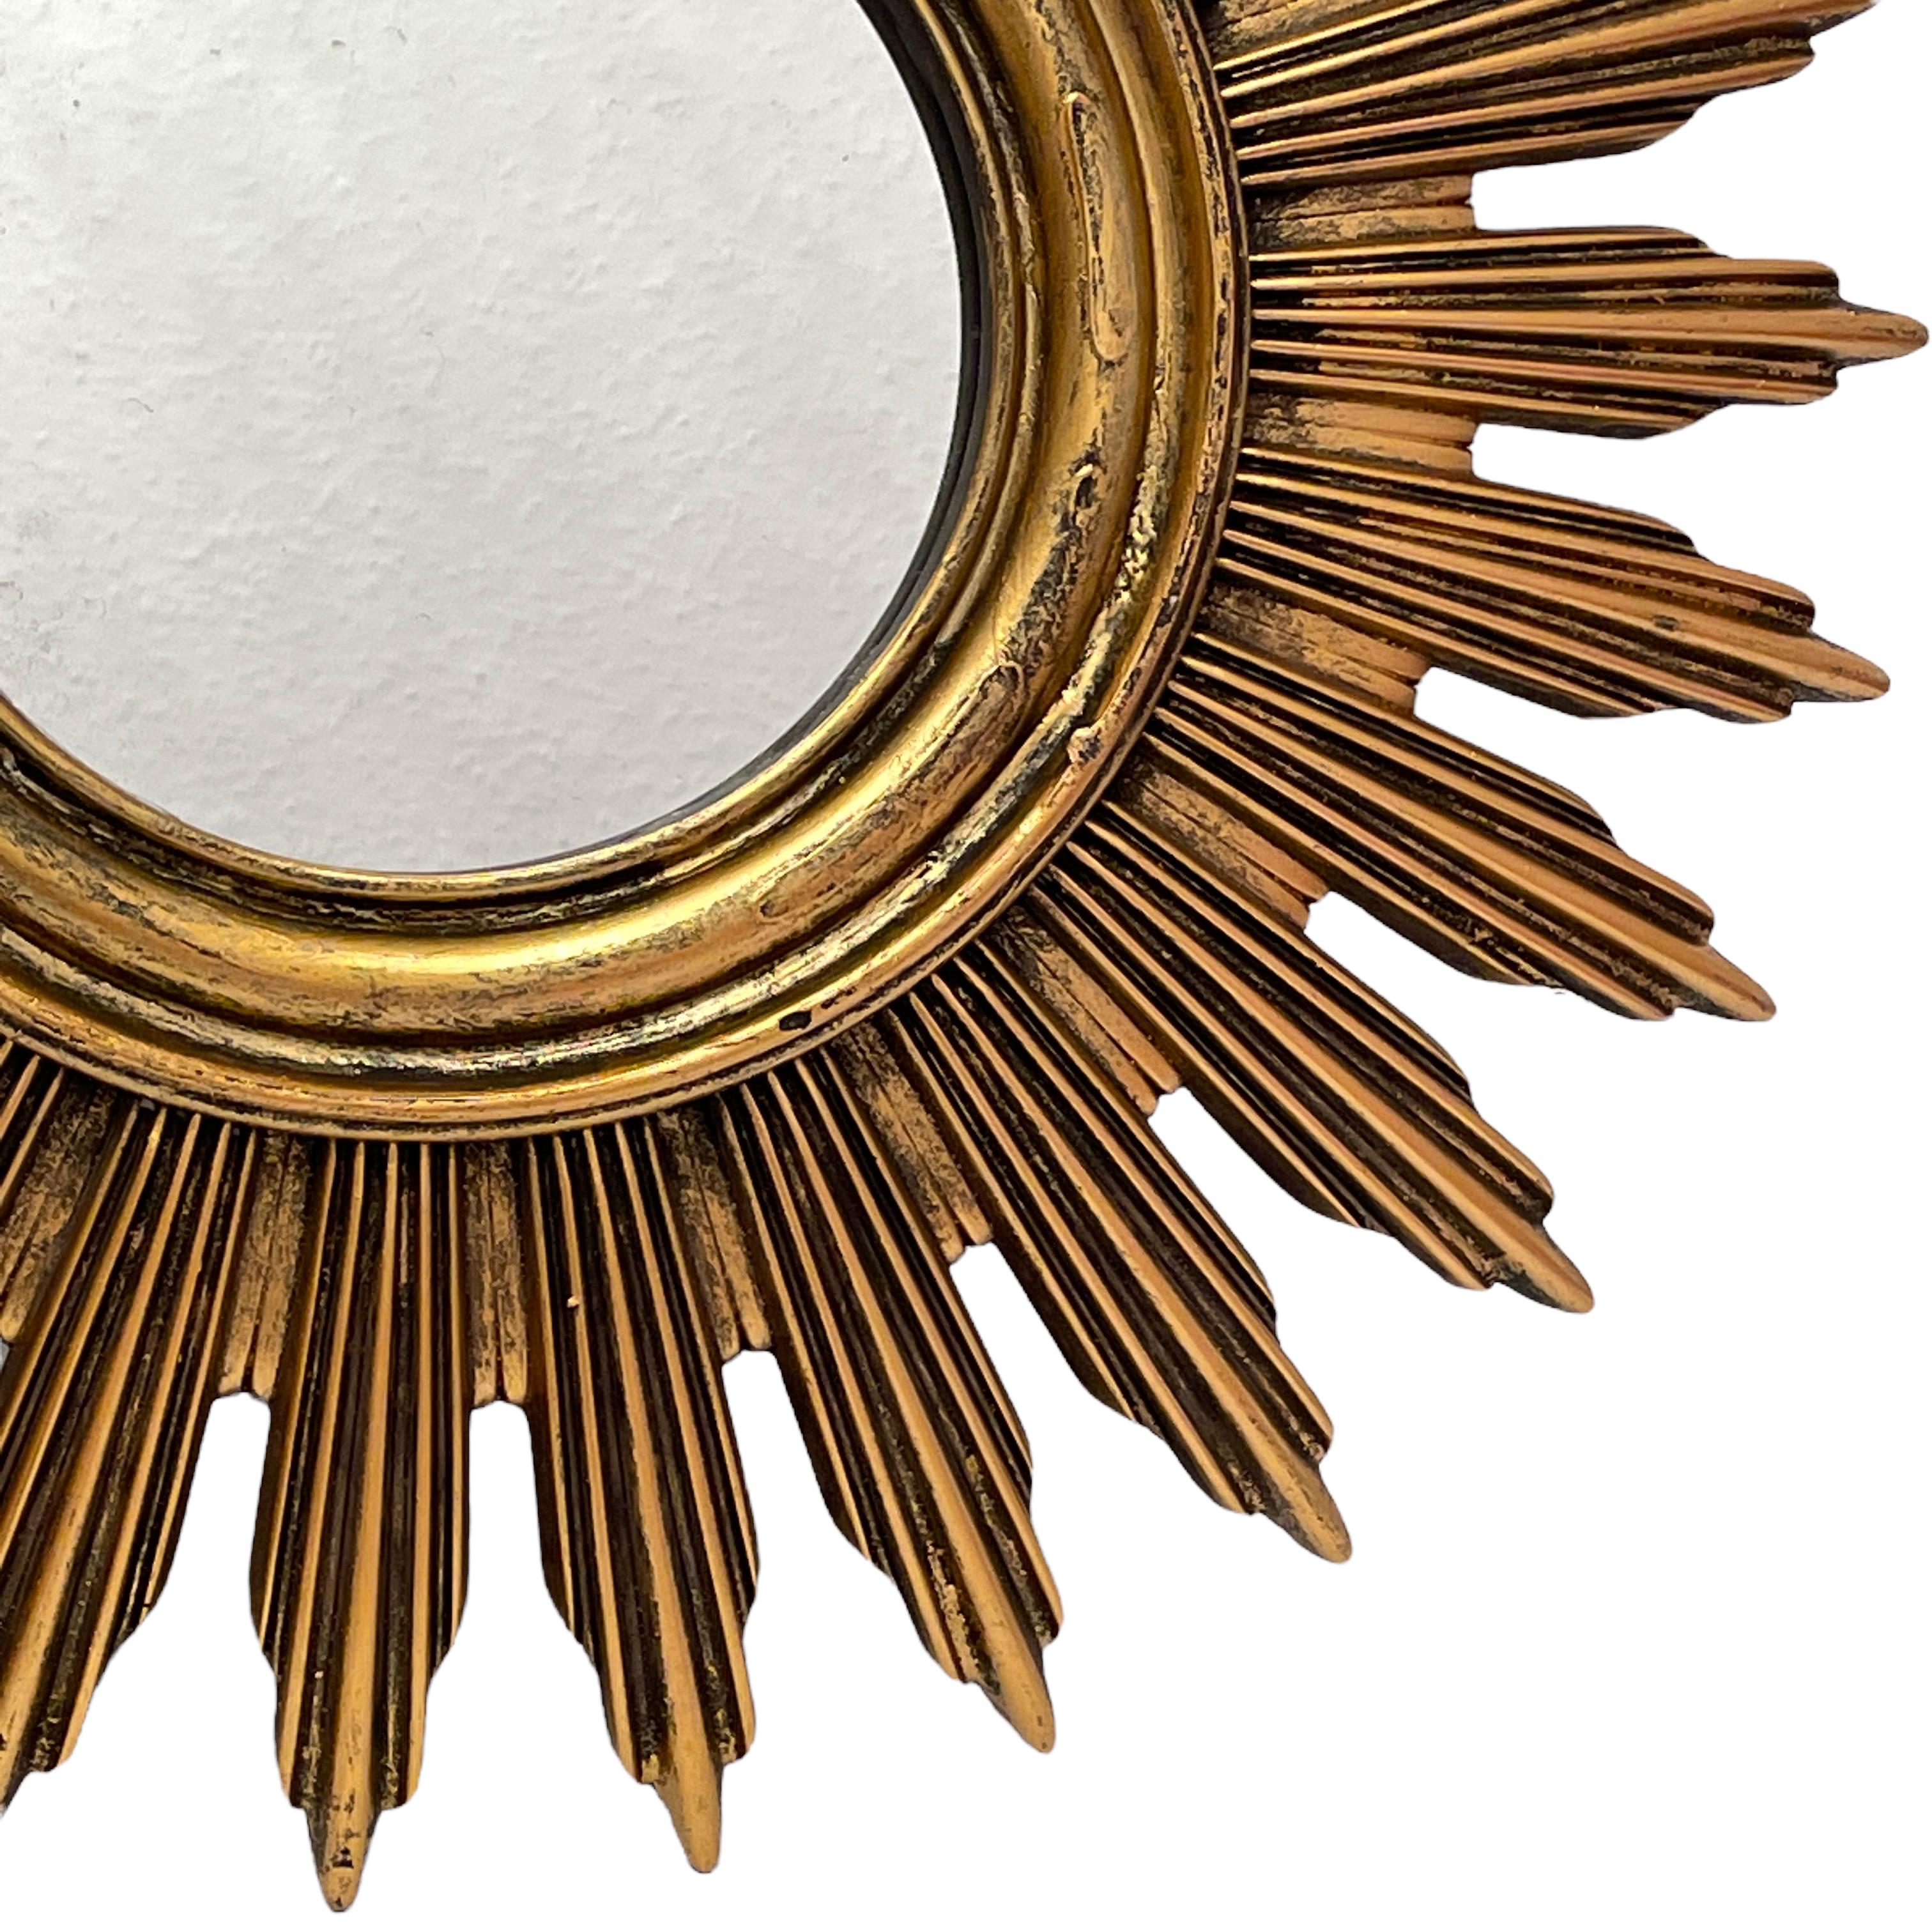 Un beau miroir en forme de starburst. Fabriqué en résine dorée et en bois. Il mesure environ 20 3/8